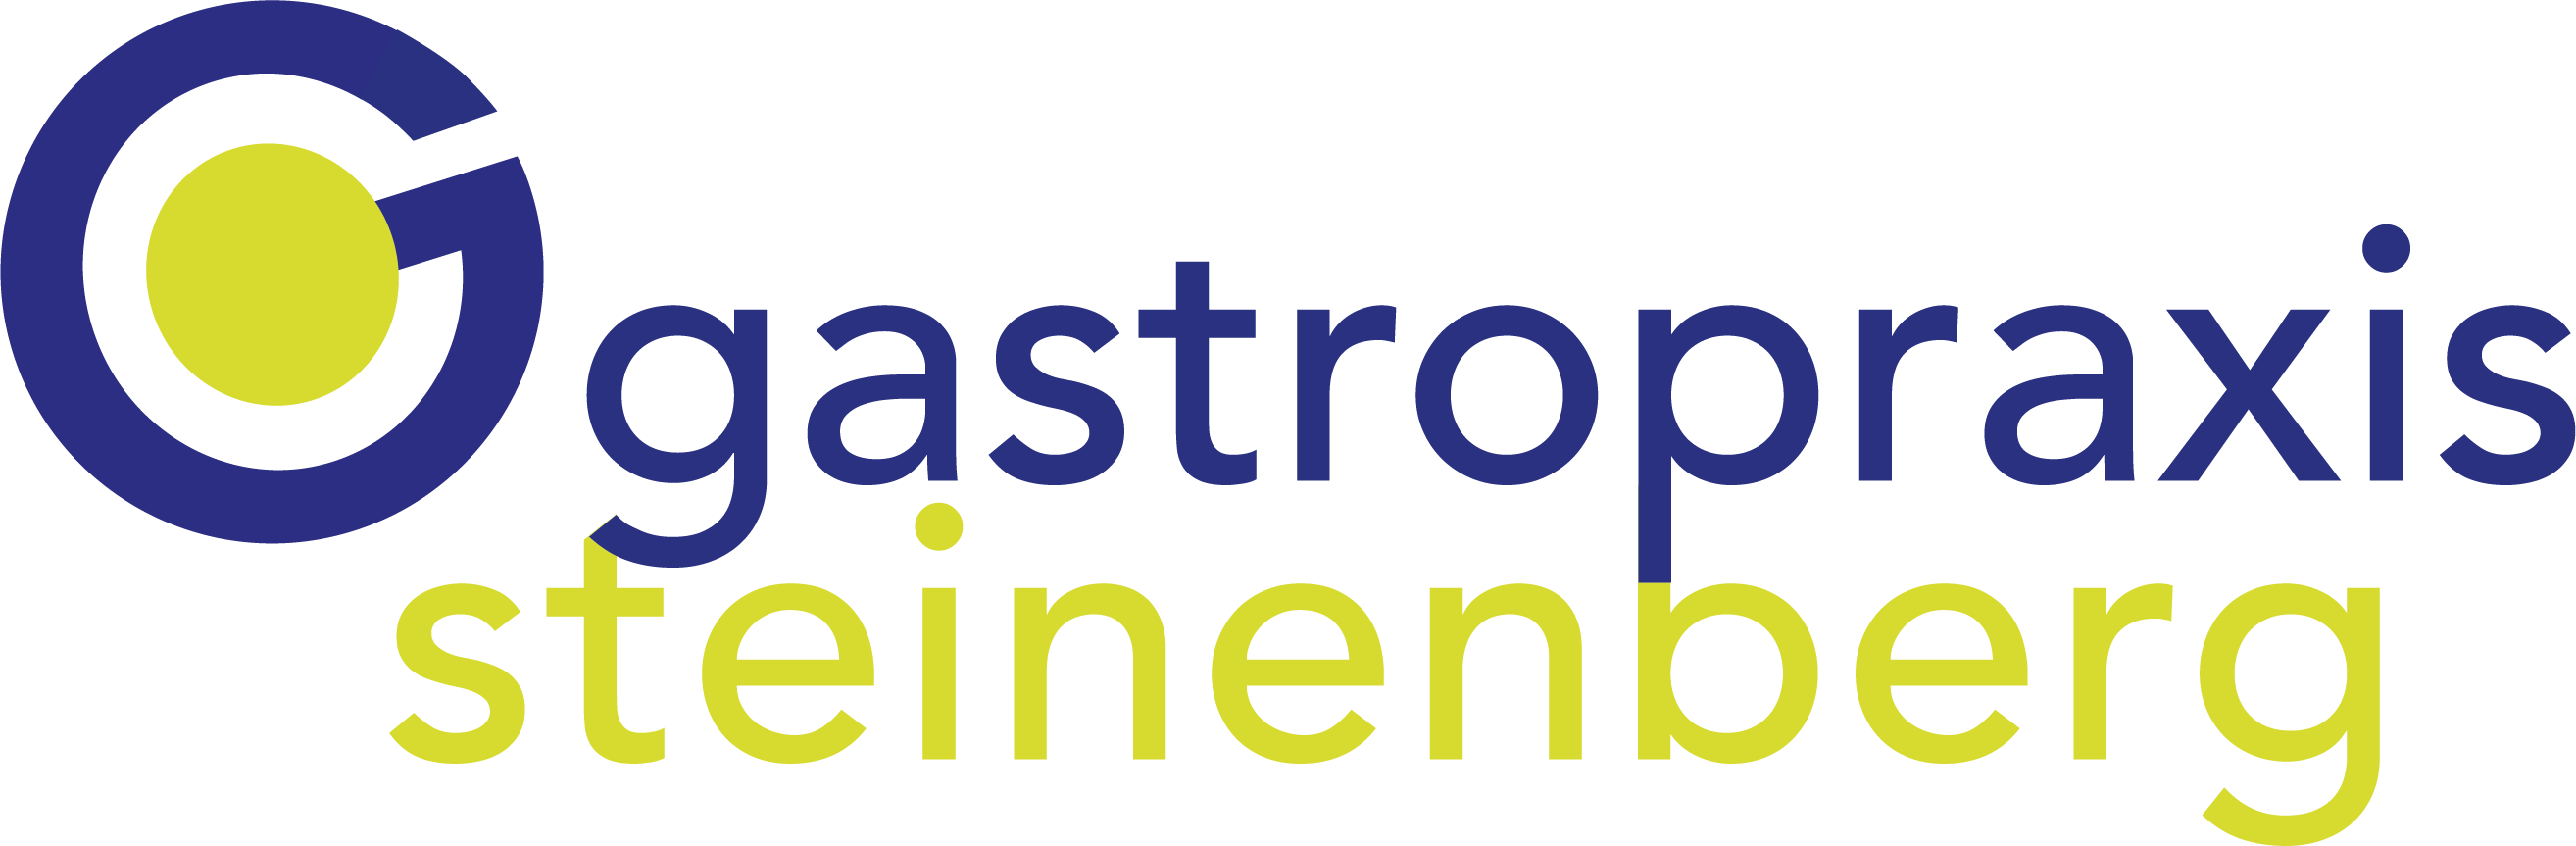 (c) Gastropraxis-steinenberg.ch